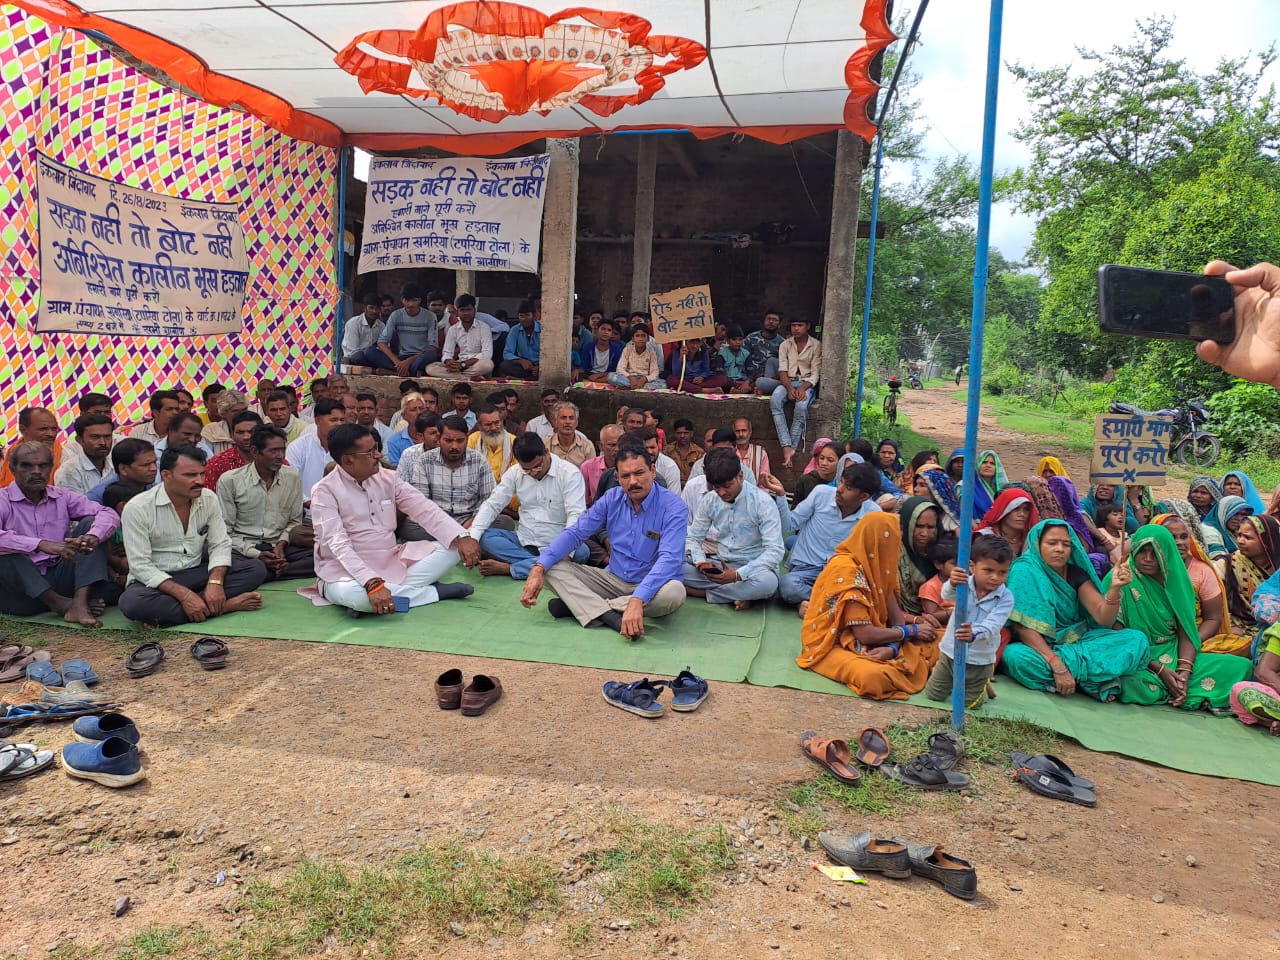 ग्रामीणों ने शुरू किया आमरण अनशन, रोड़ नहीं तो वोट नहीं लगाए जमकर नारे | New India Times